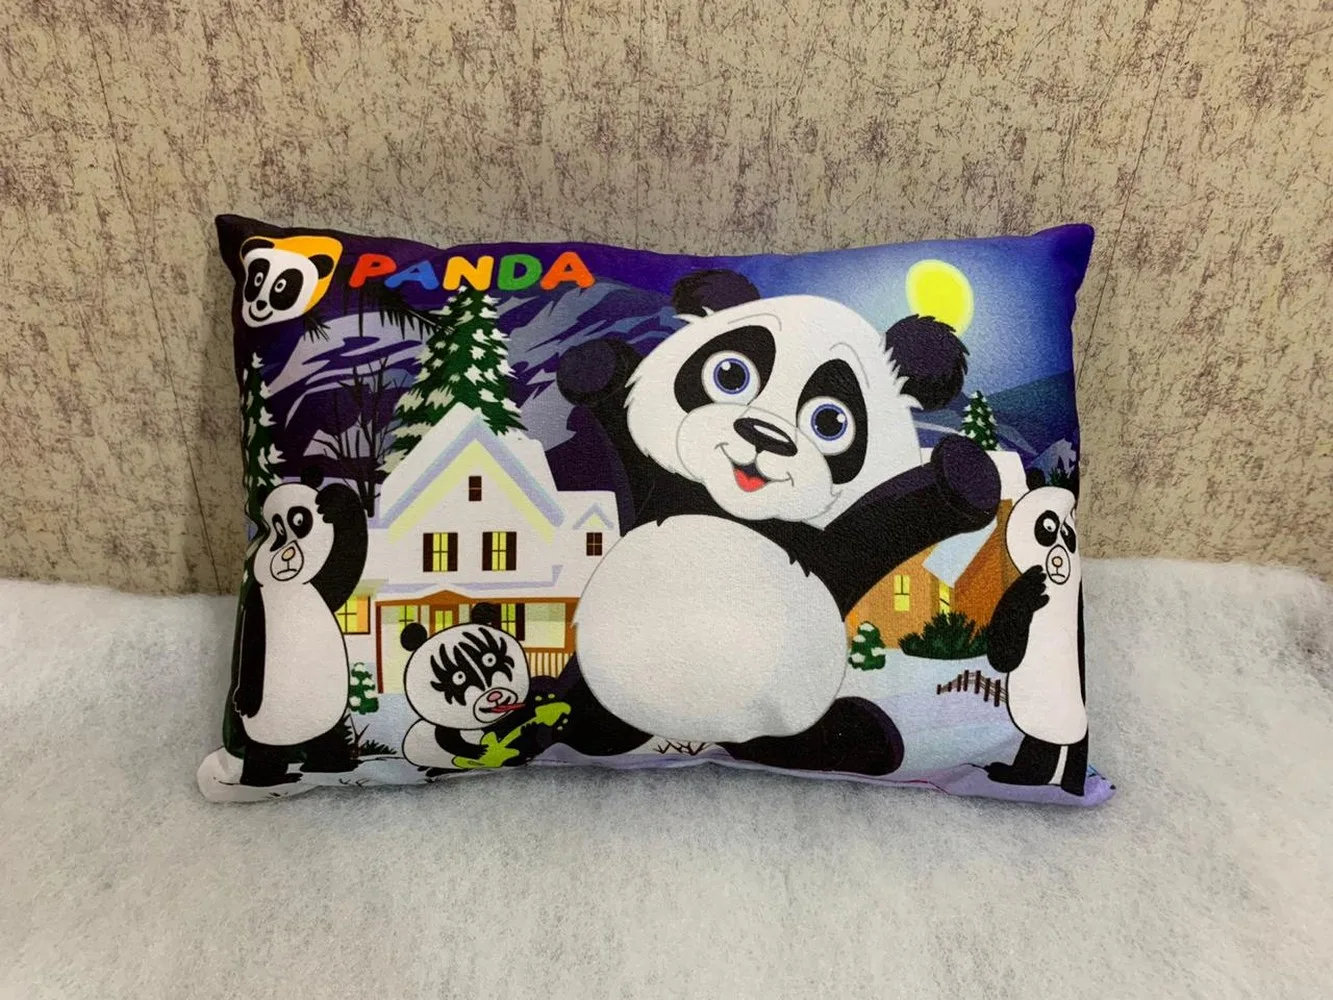 Kids Cartoon Pillow Panda, 11x17, 1 Piece, Colorful